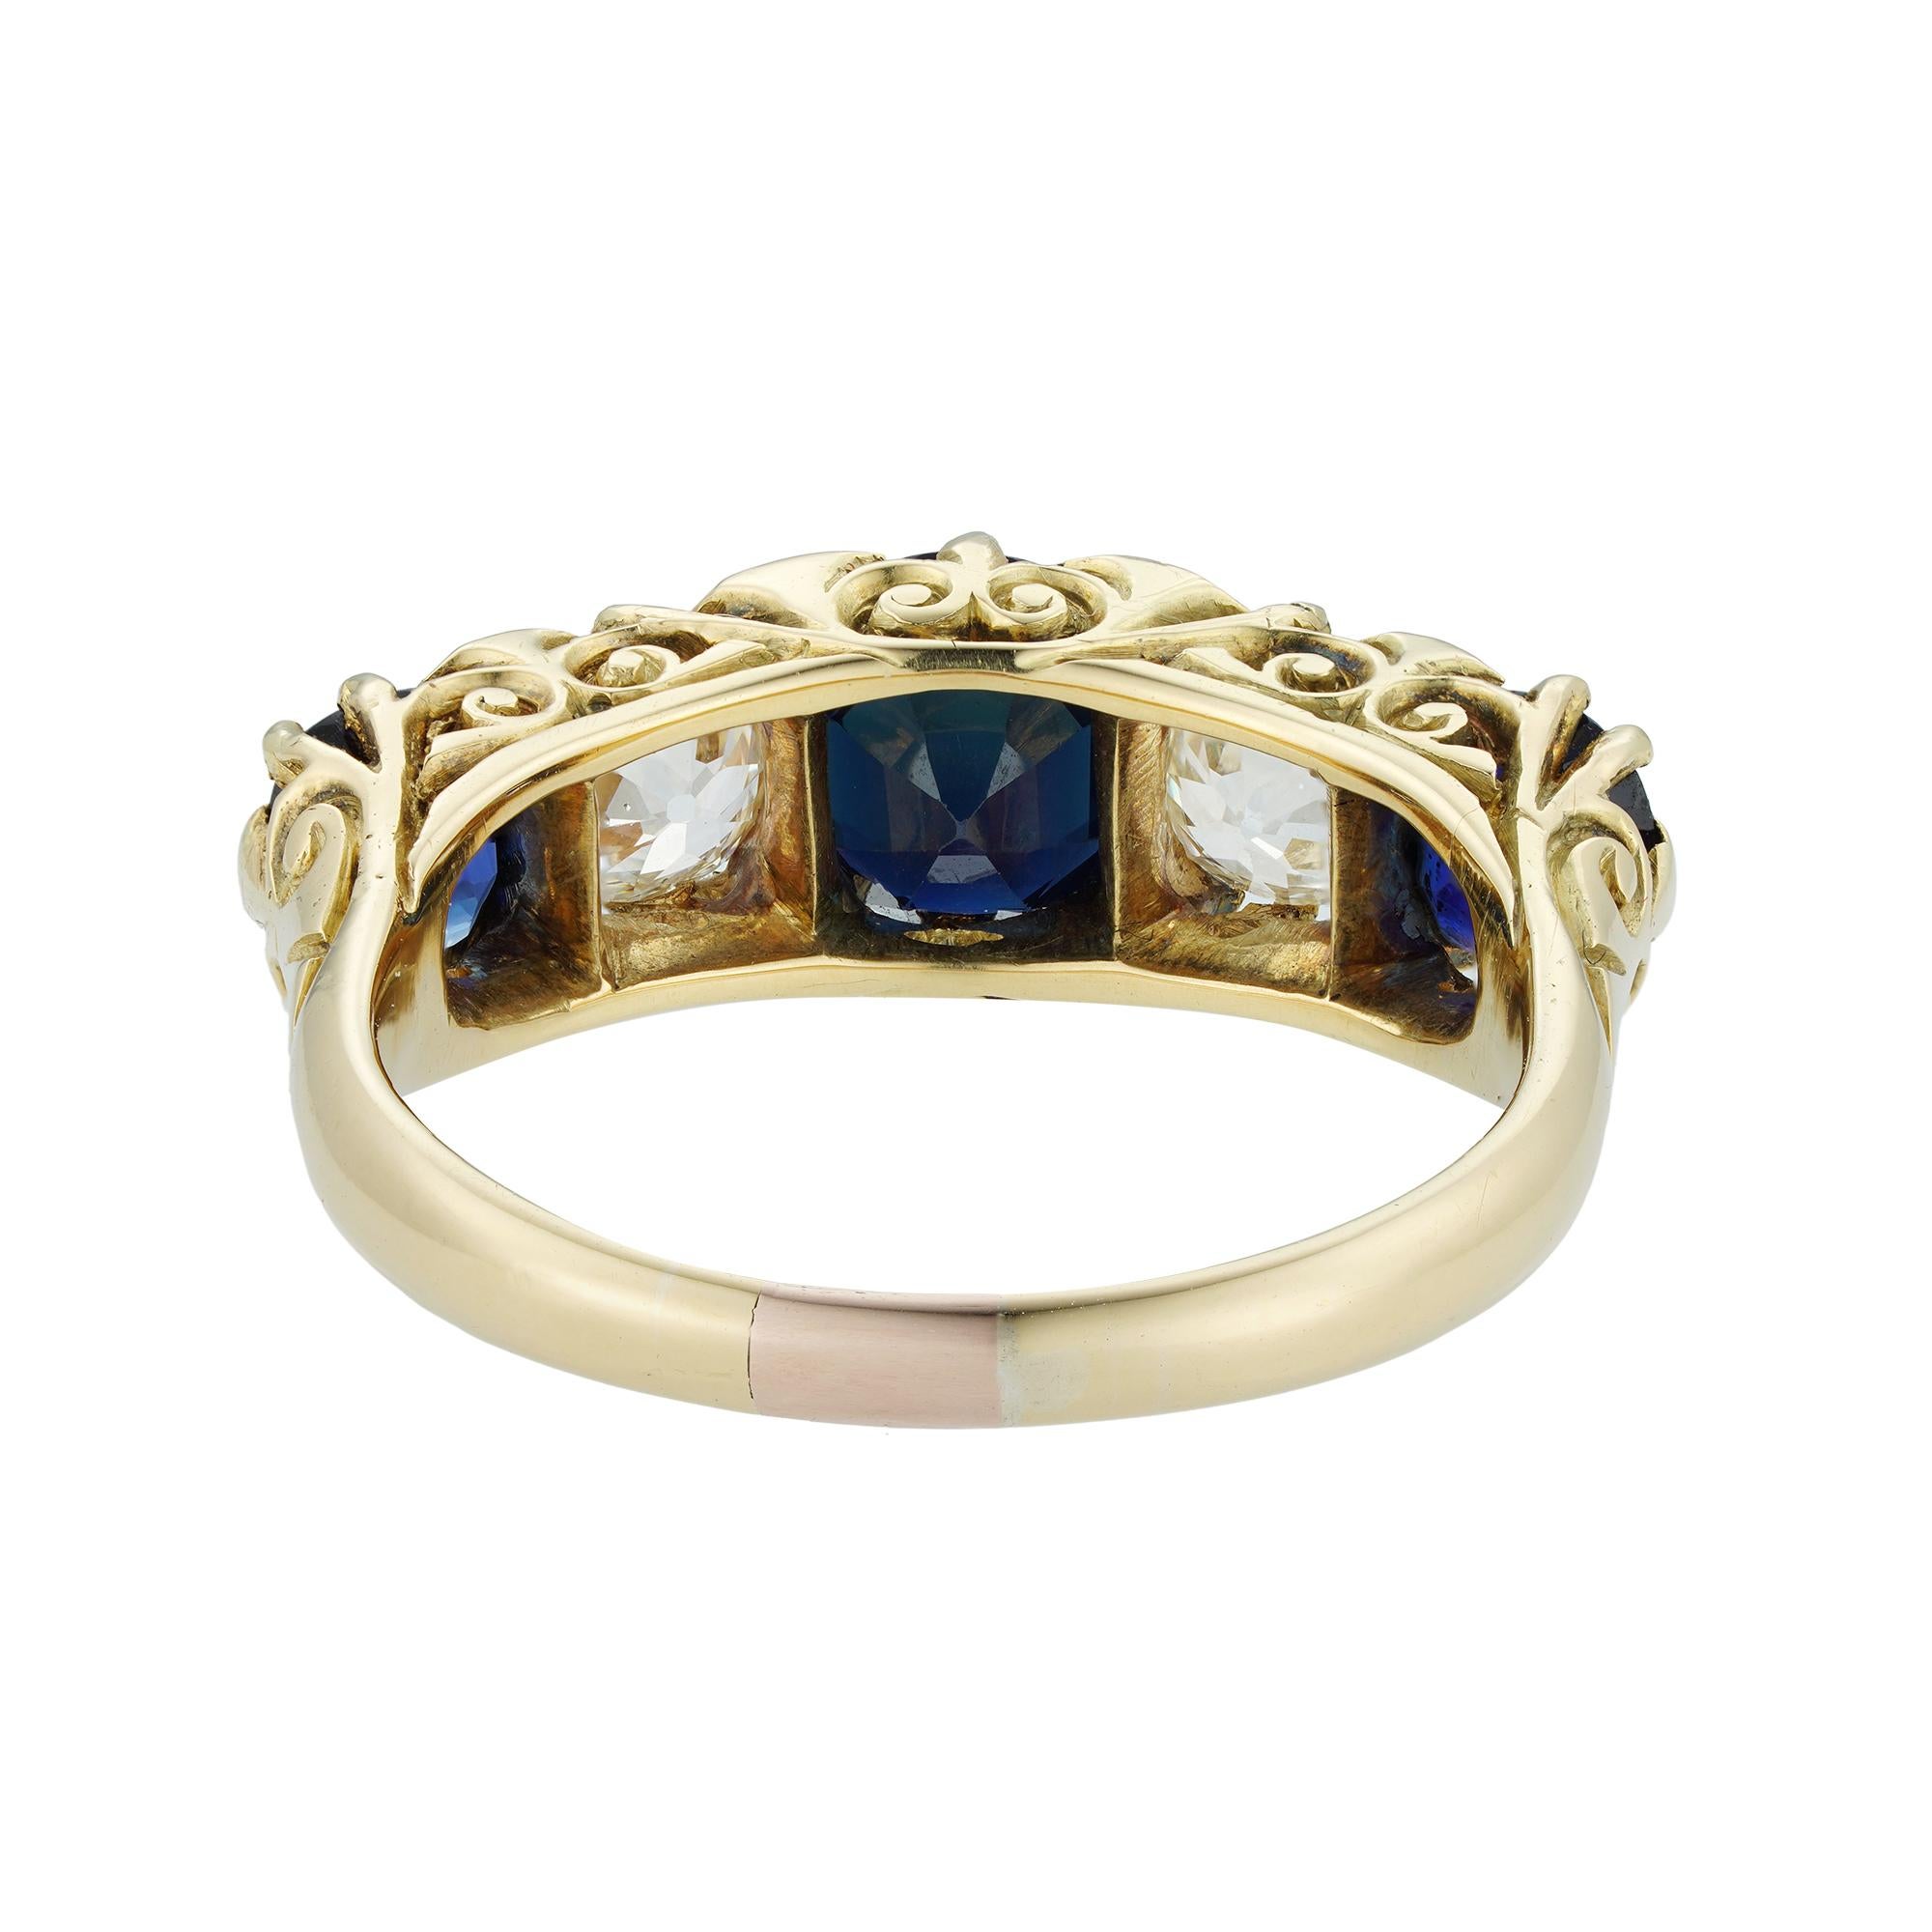 Brilliant Cut Late Victorian Sapphire and Diamond Five-Stone Ring